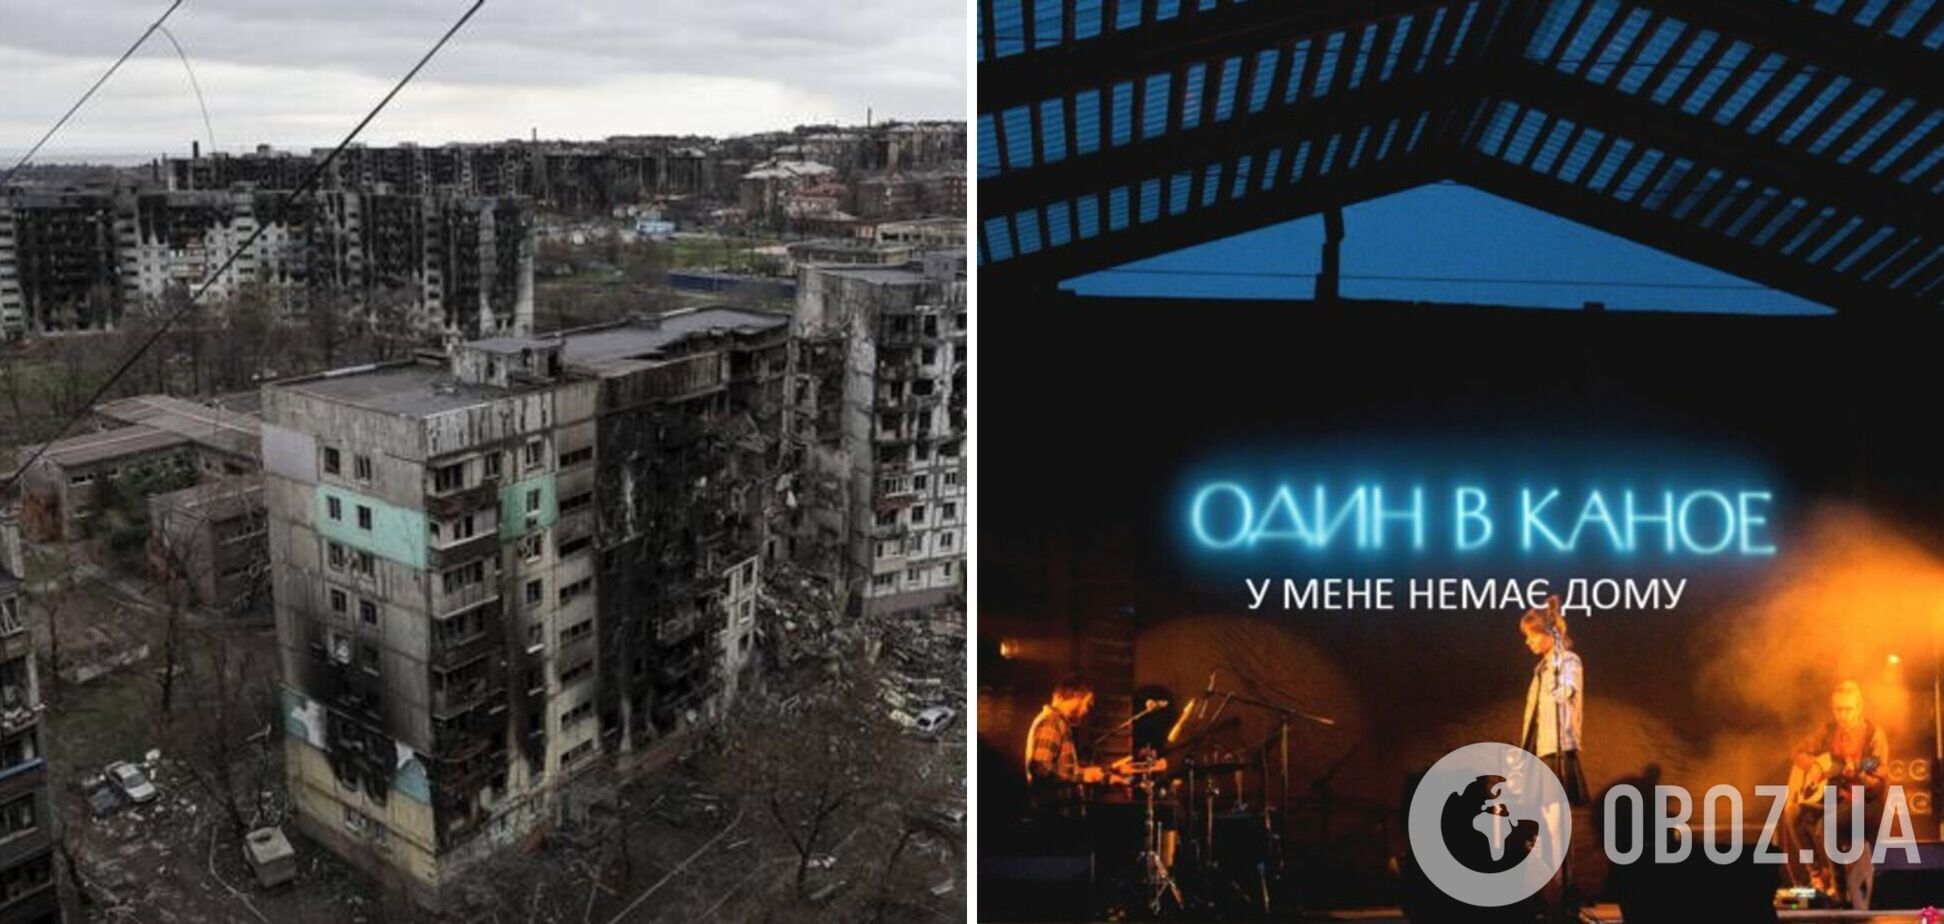 'У мене немає дому': в окупованому Маріуполі гучно ввімкнули українську пісню, яка відображає жахи війни. Відео 